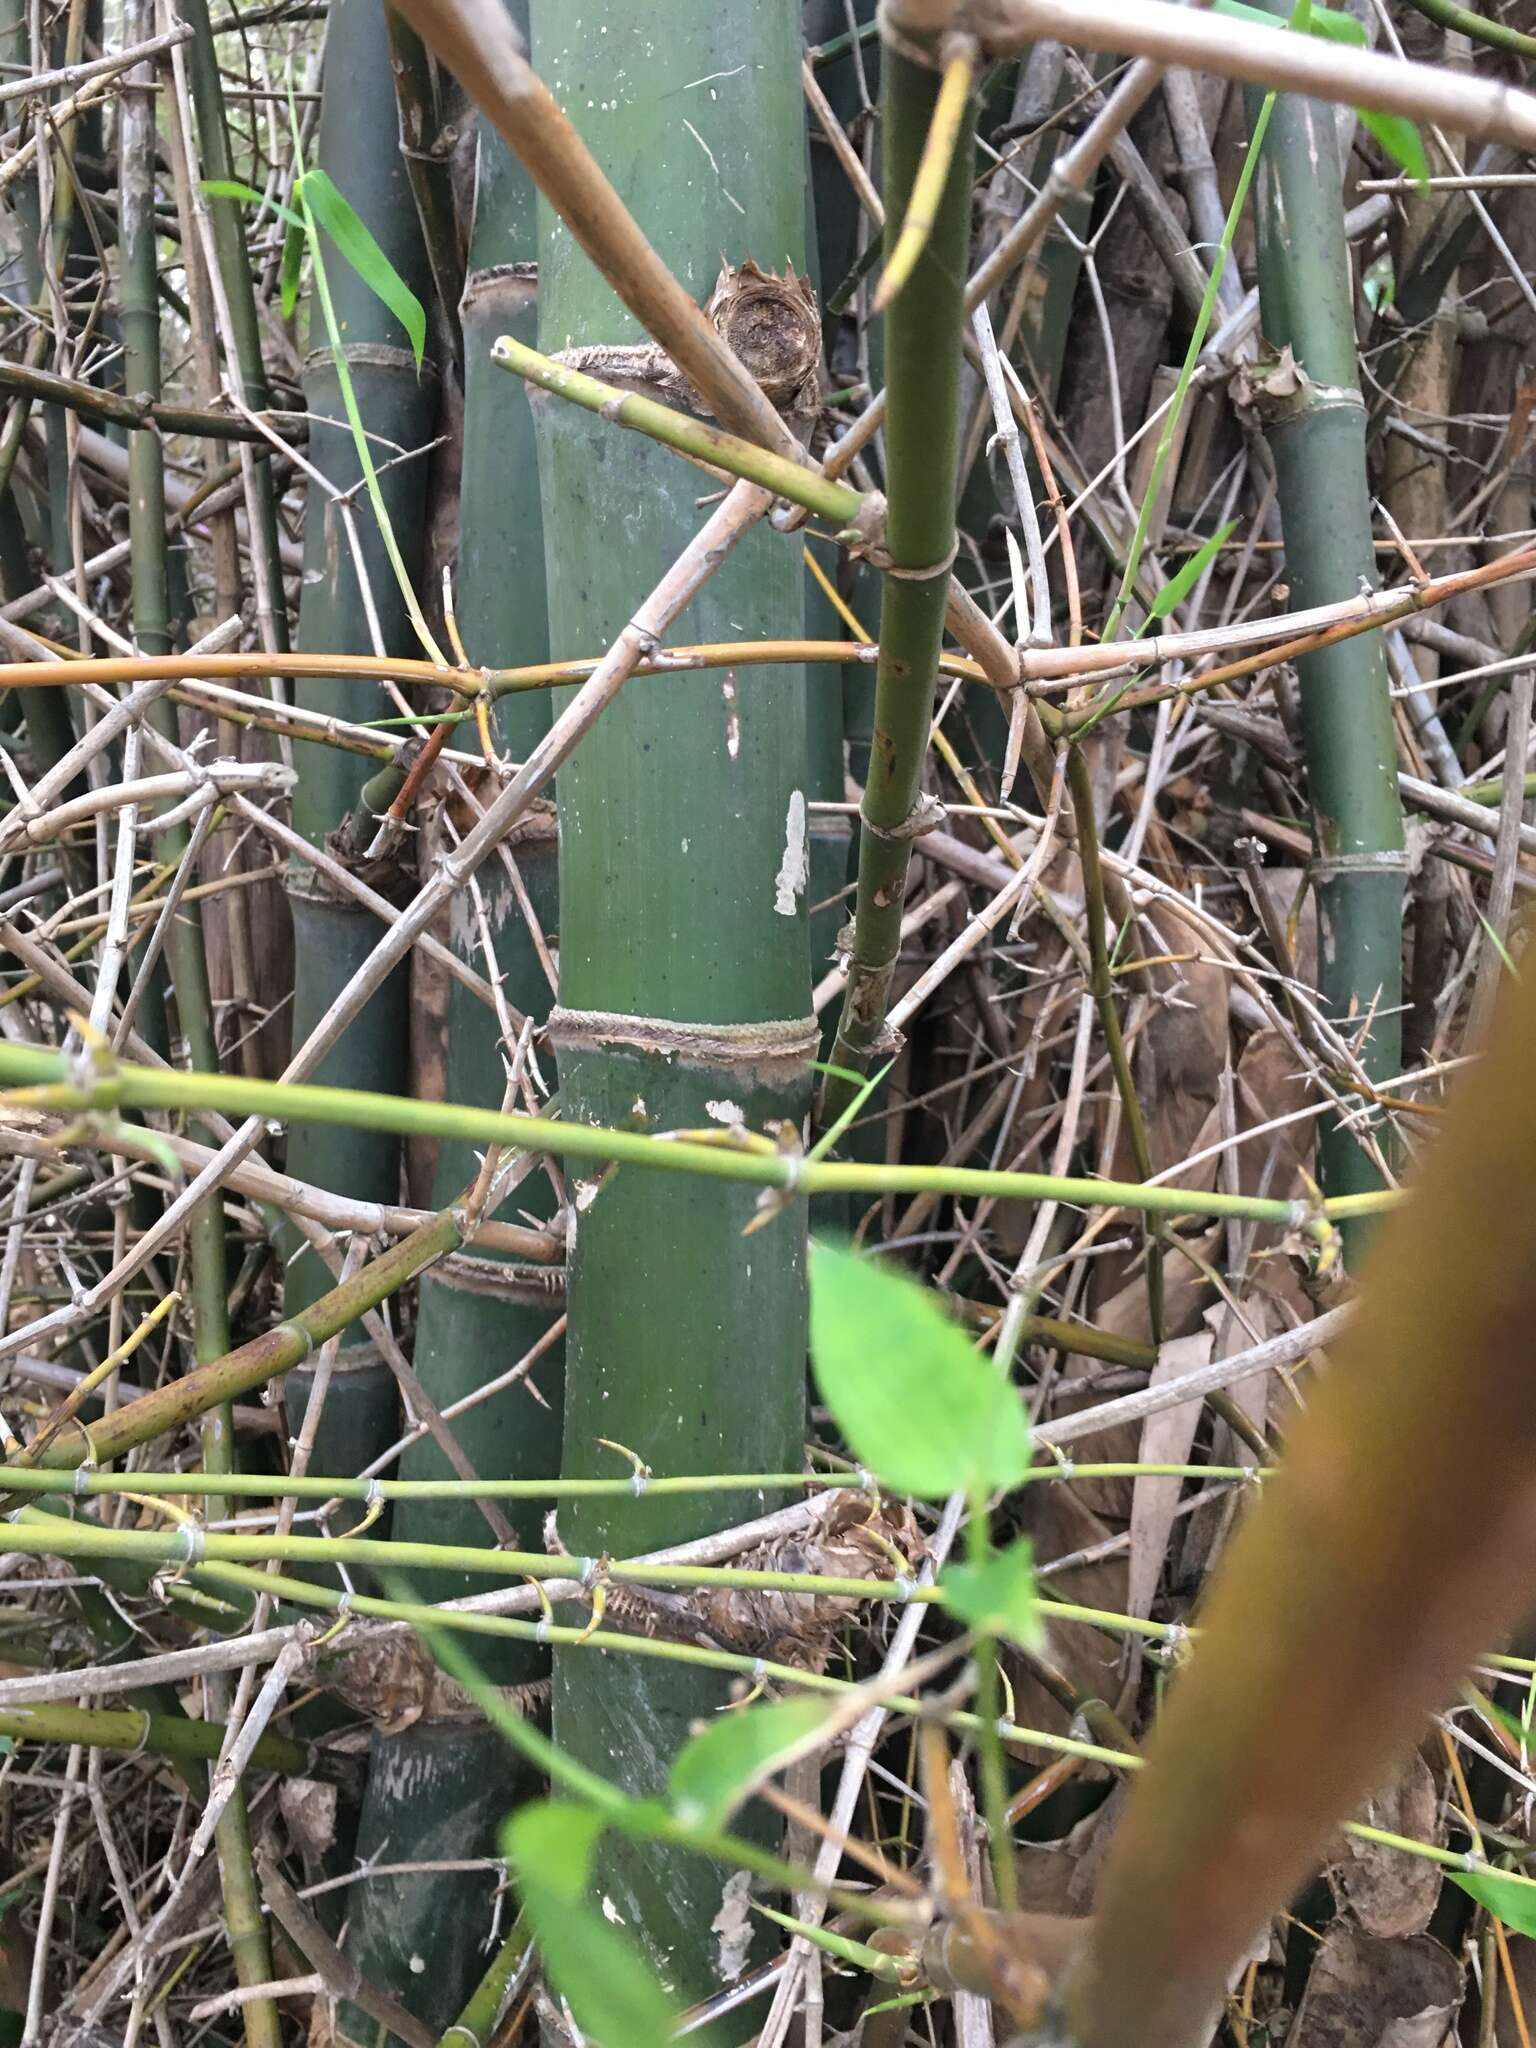 Image of Bambusa spinosa Roxb.